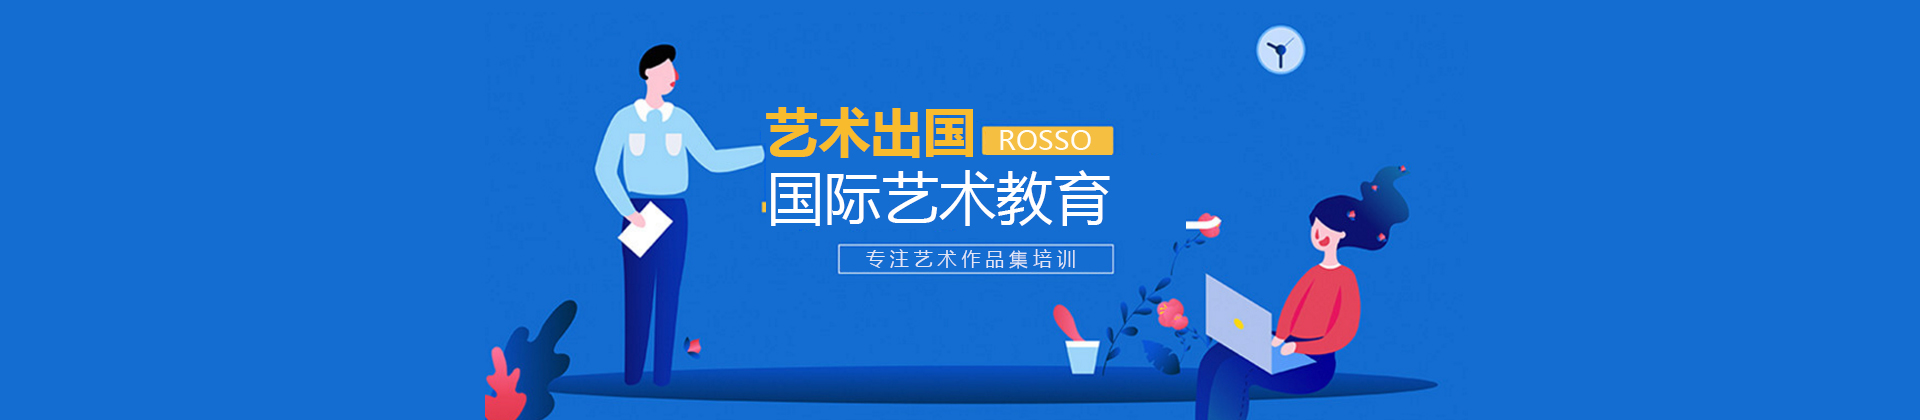 上海Rosso国际艺术作品集教育